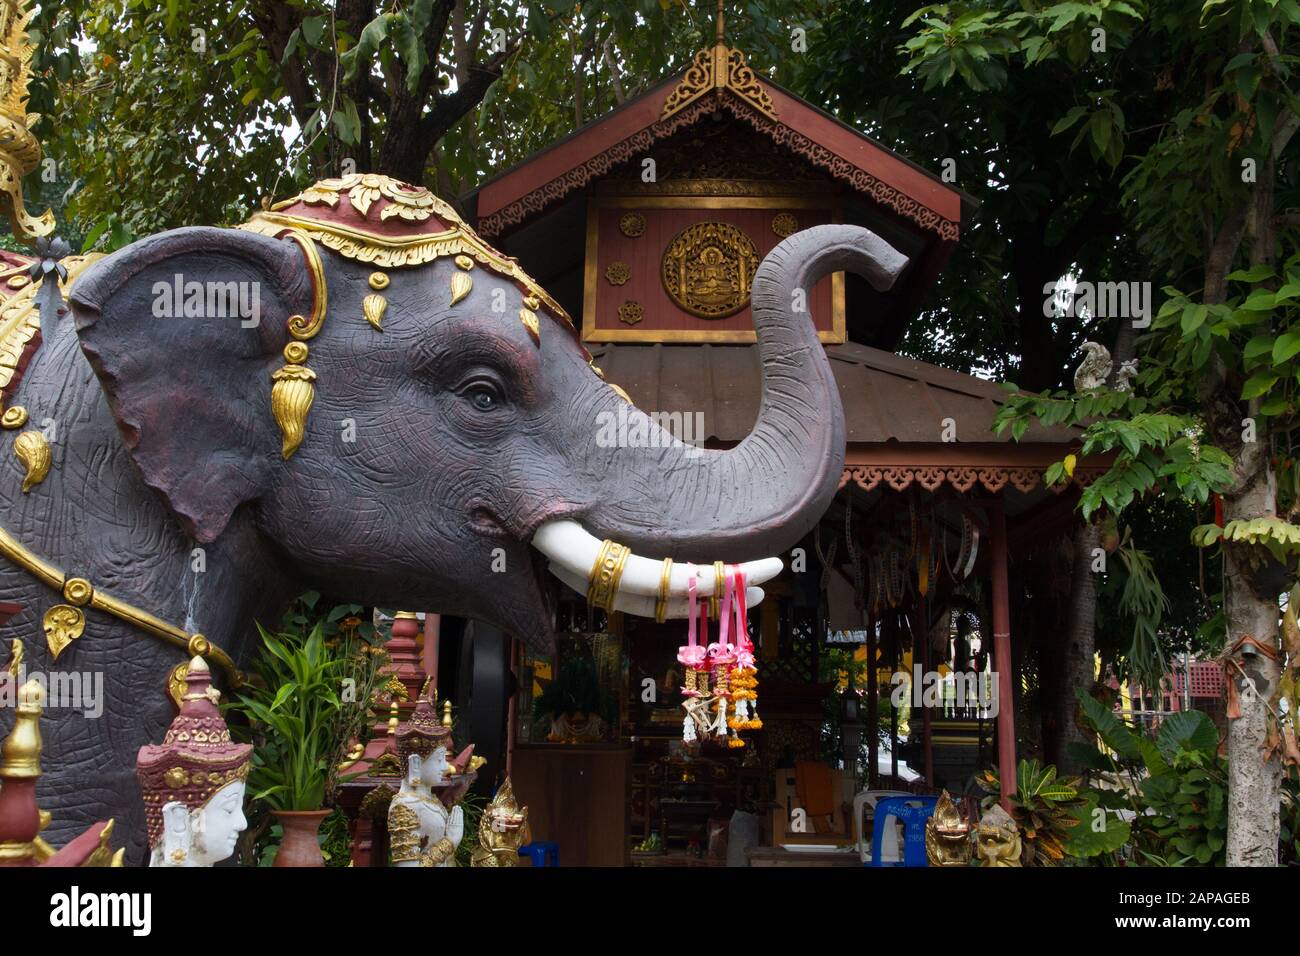 la statua dell'elefante fangs che decora l'arredamento del tempio buddhismo buddista Foto Stock